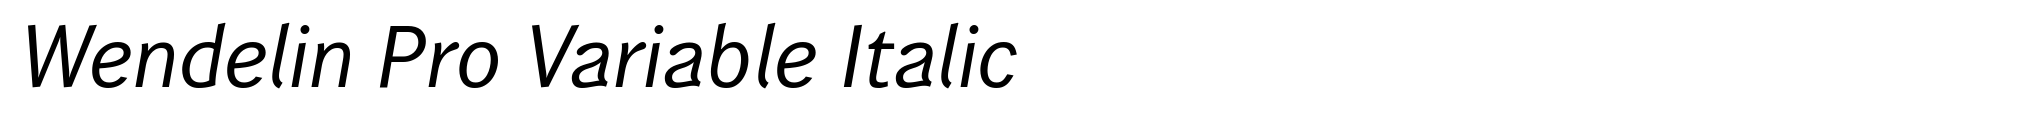 Wendelin Pro Variable Italic image